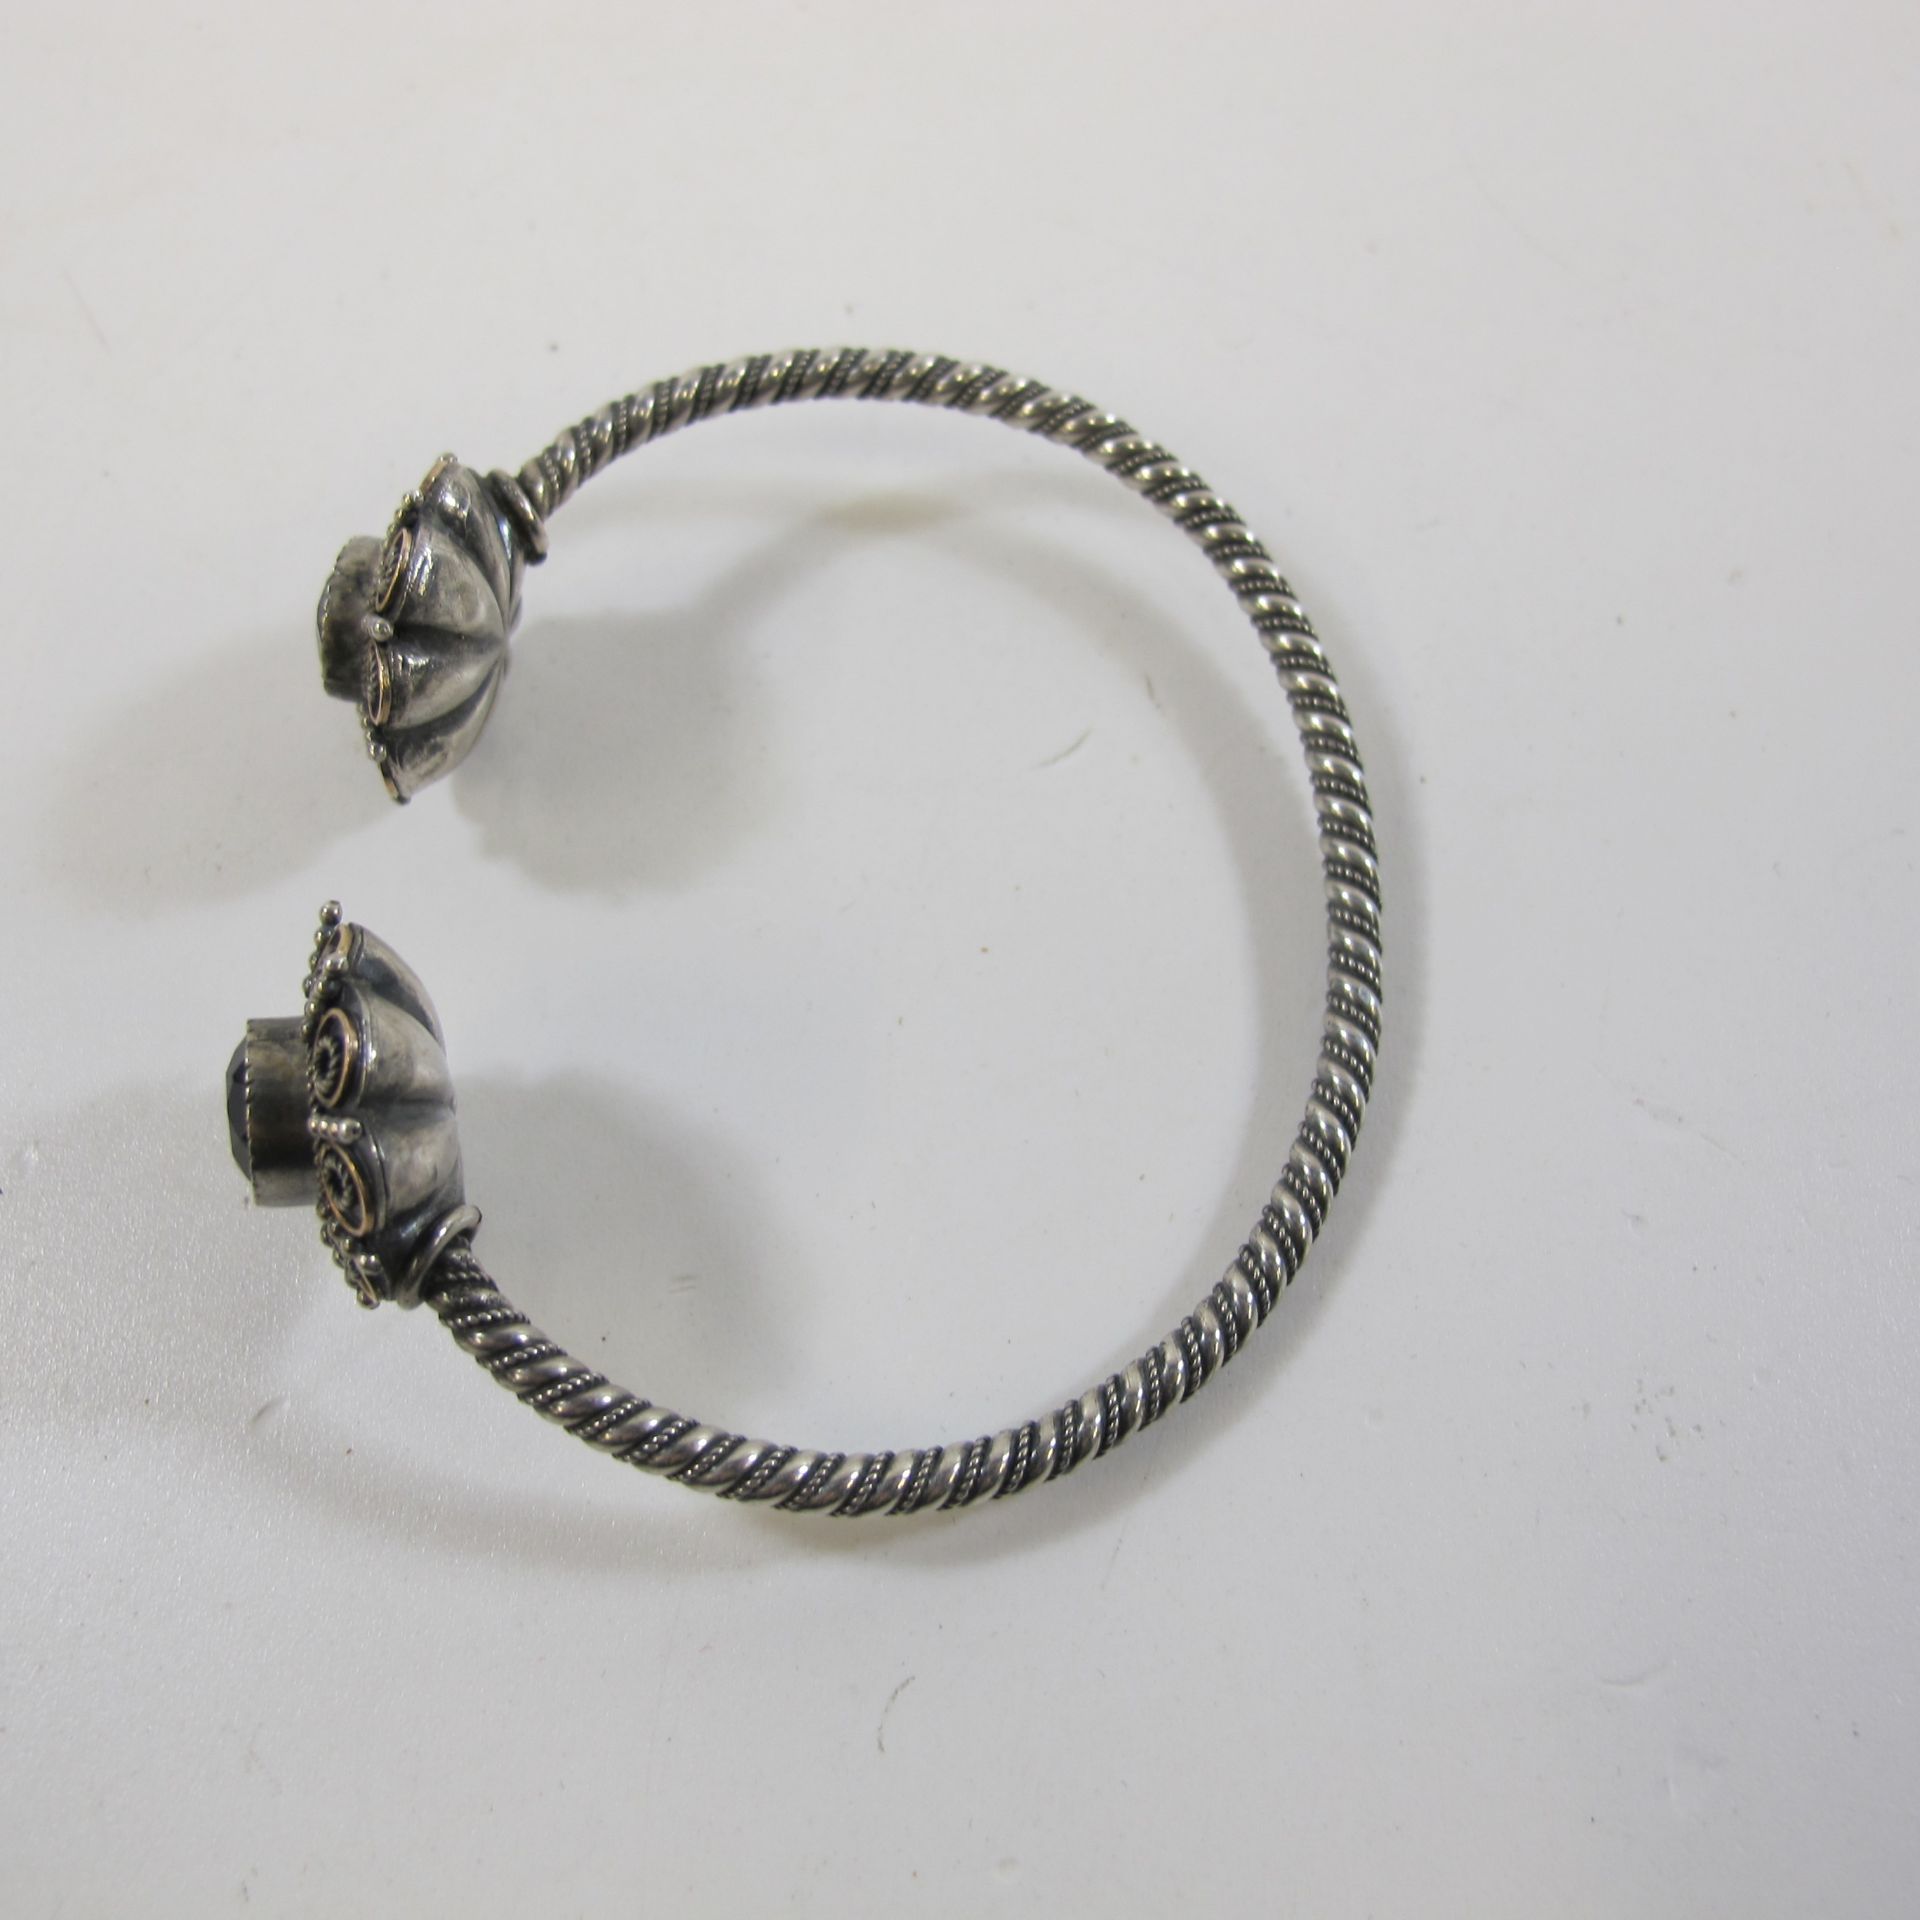 Antique Amethyst Set Torque-style Silver Bracelet (est £30-£60)